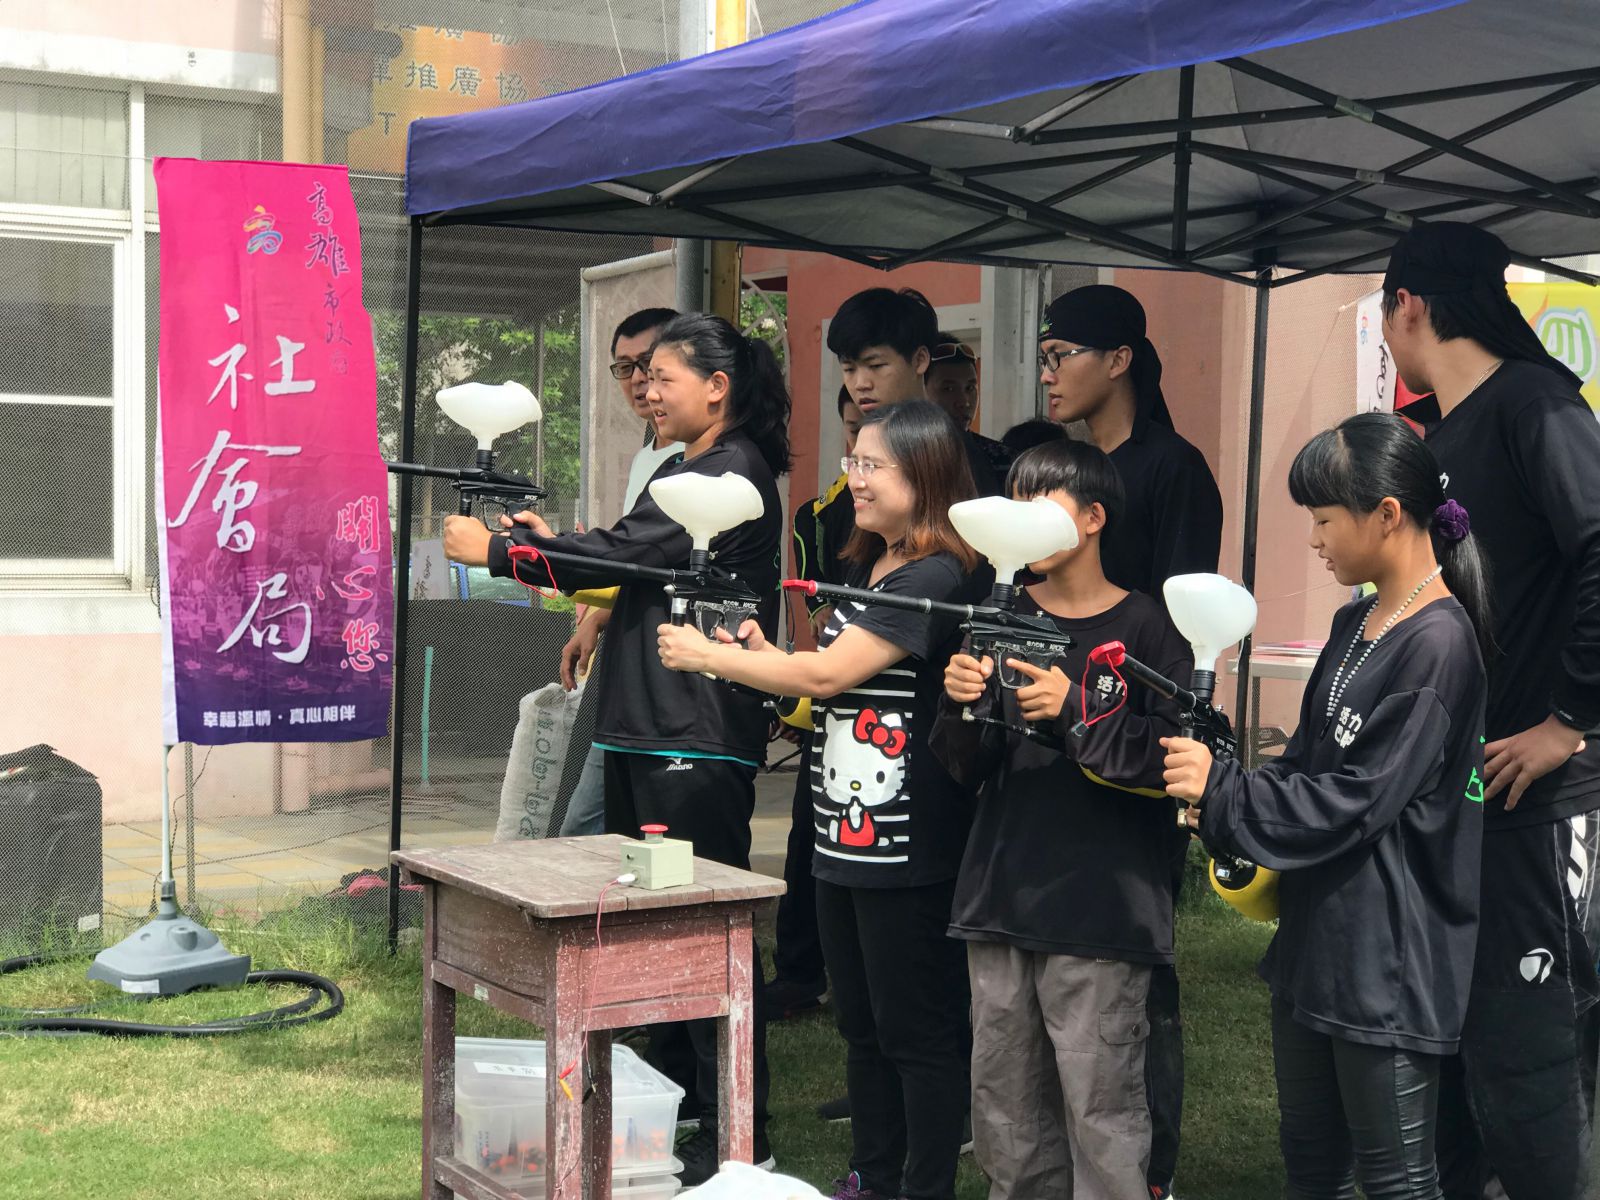 小港社福中心-辦理青少年漆彈遊戲提供青少年休閒育樂活動。